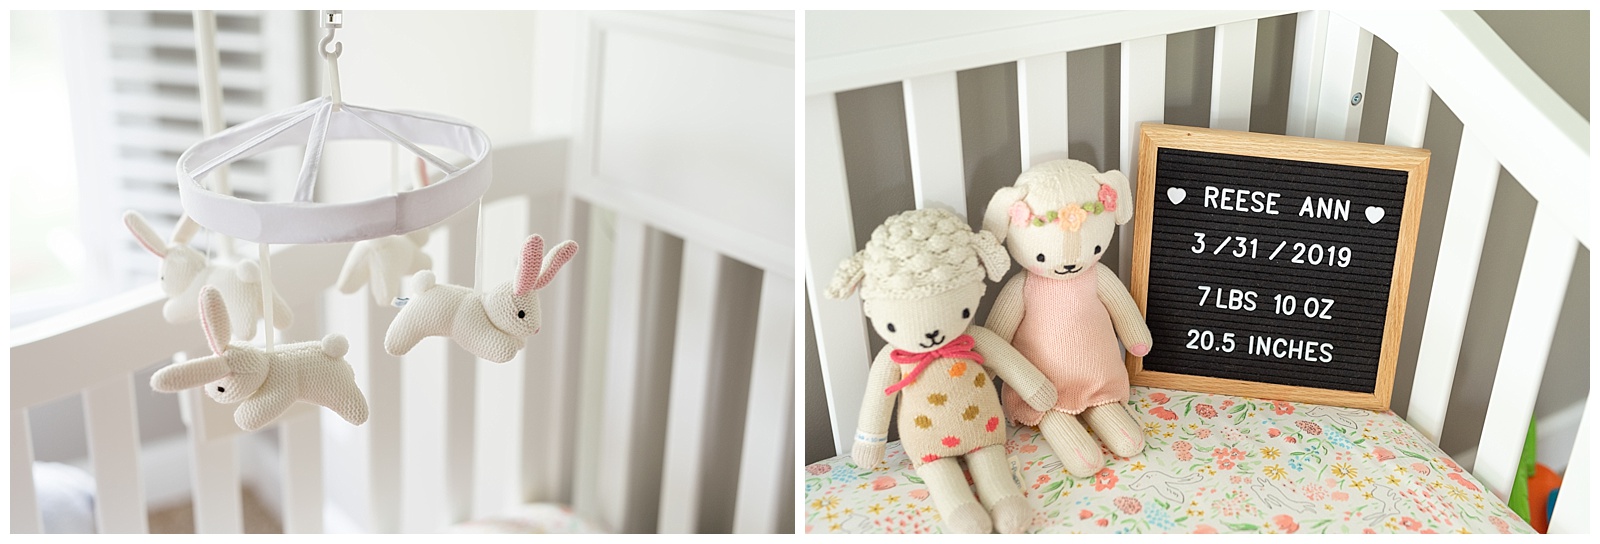 baby girl crib with bunny mobile